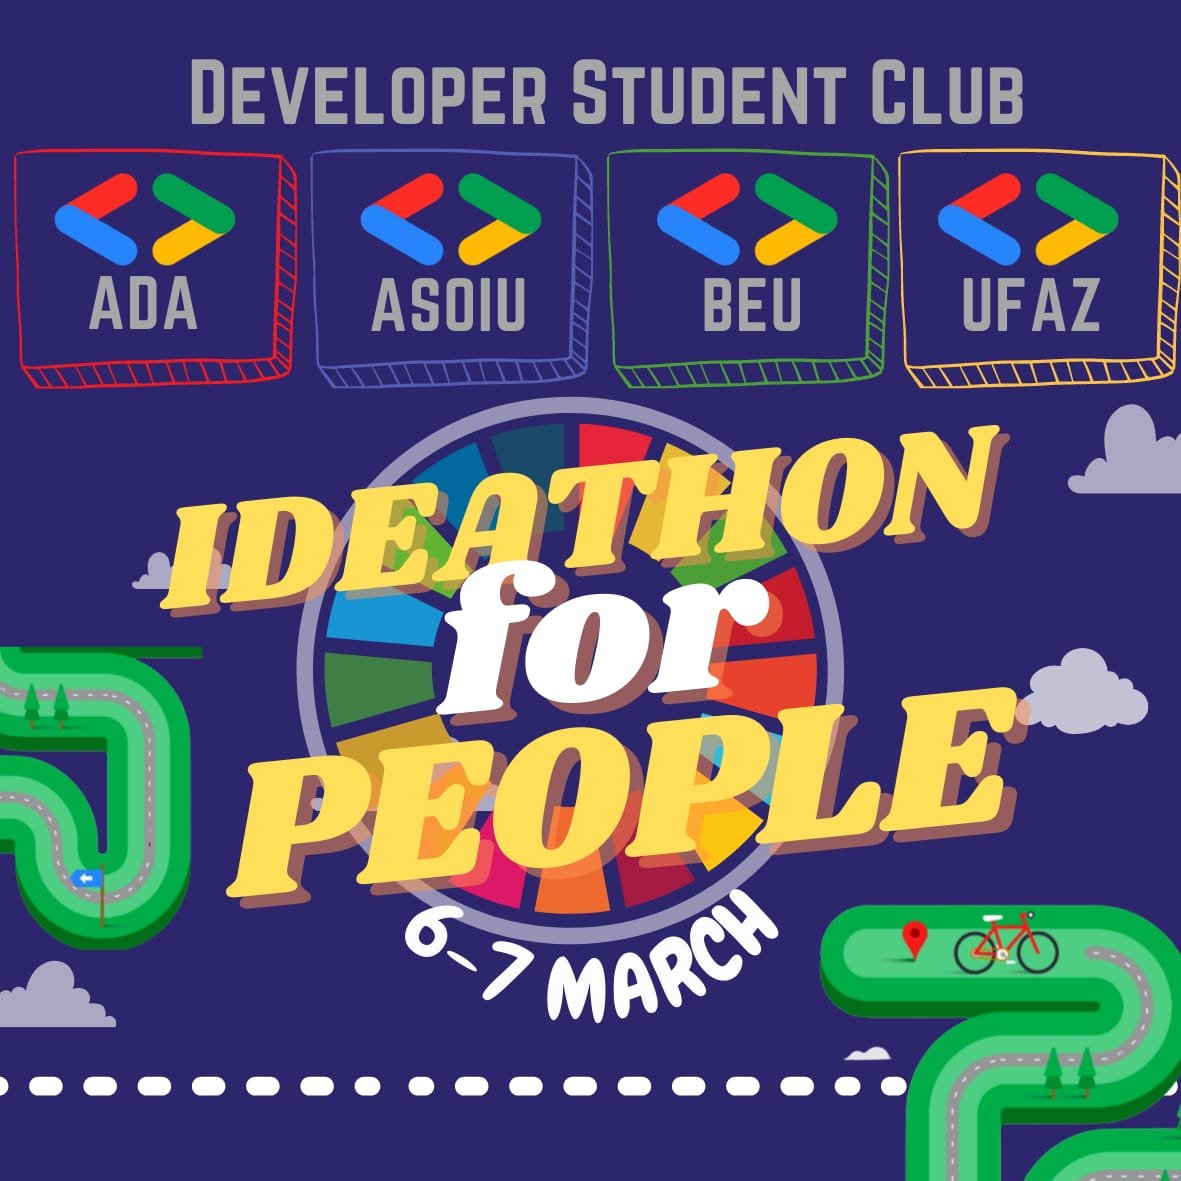 “Ideathon for People” adlı müsabiqə keçiriləcək